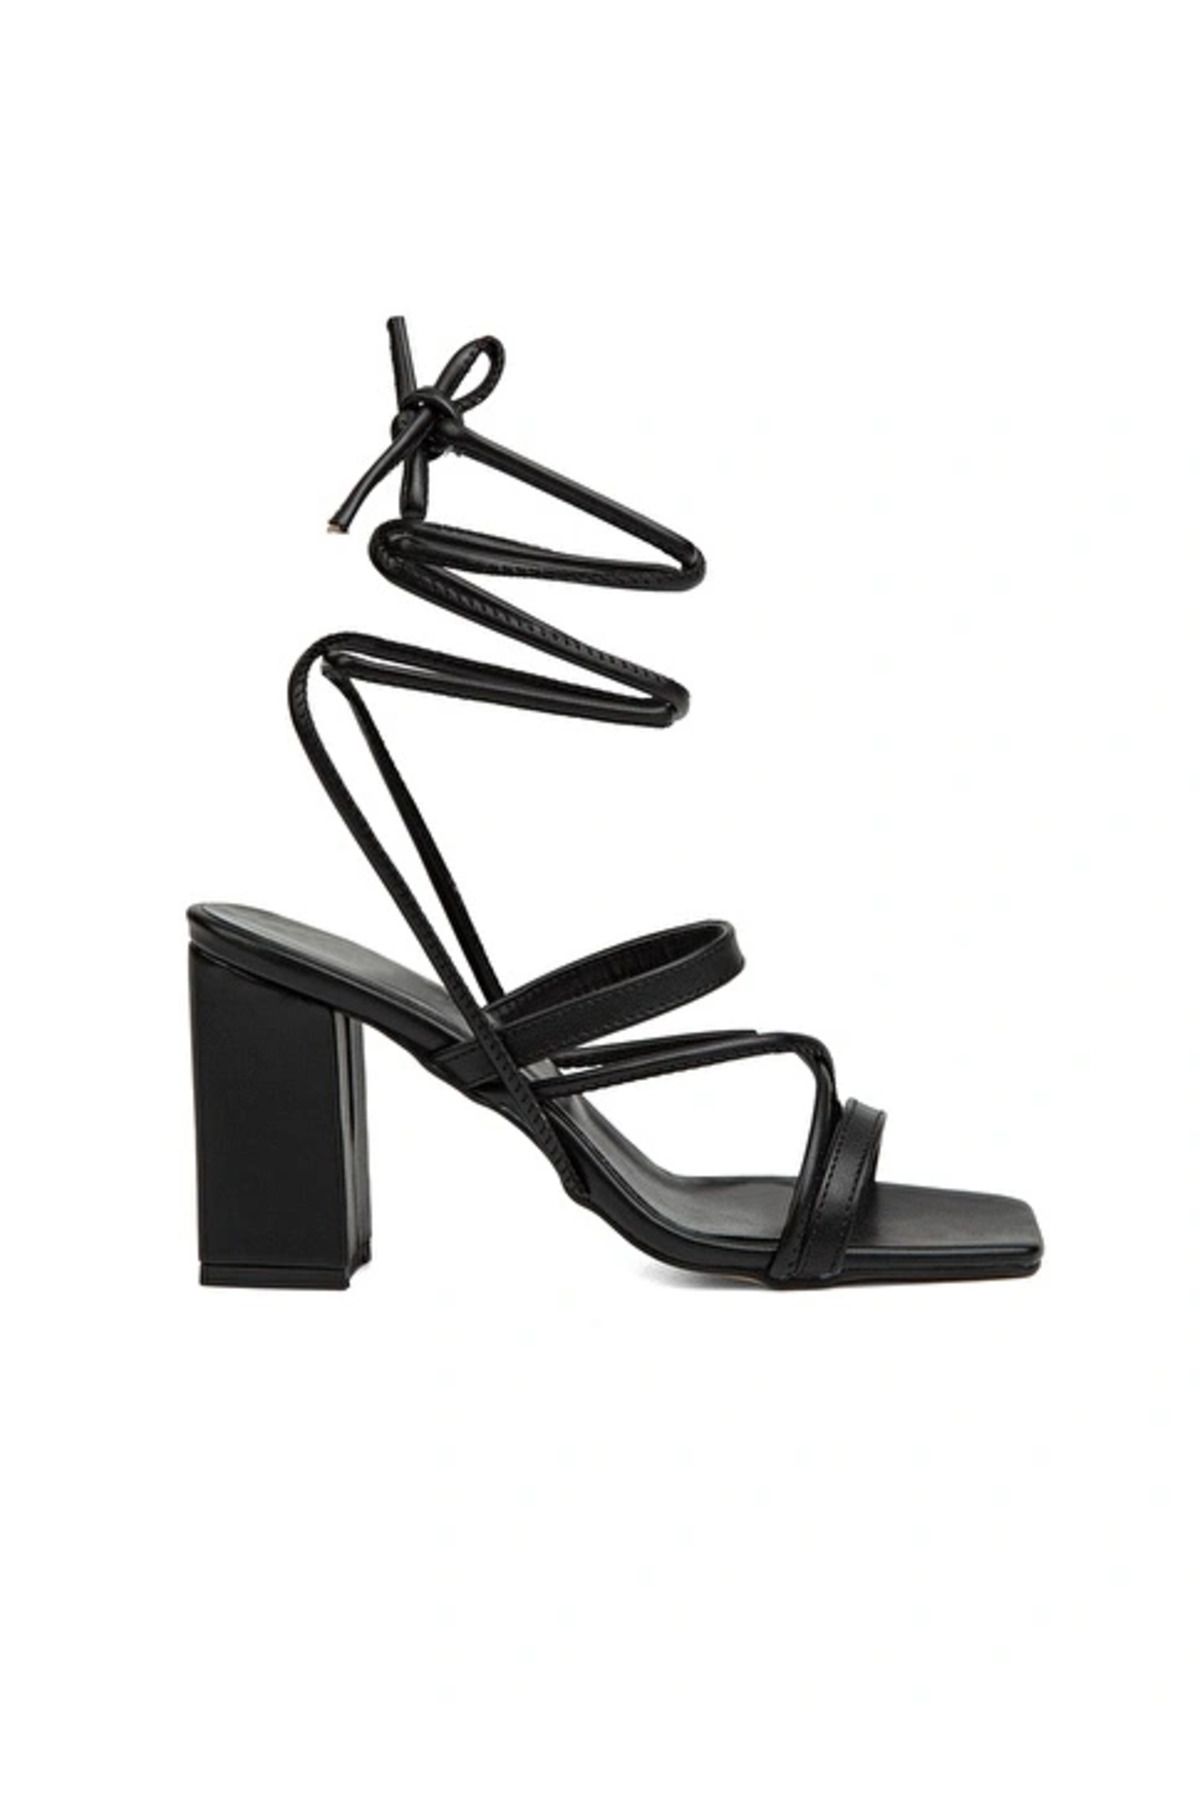 Pierre Cardin Siyah Kadın Topuklu Ayakkabı Pc-52269